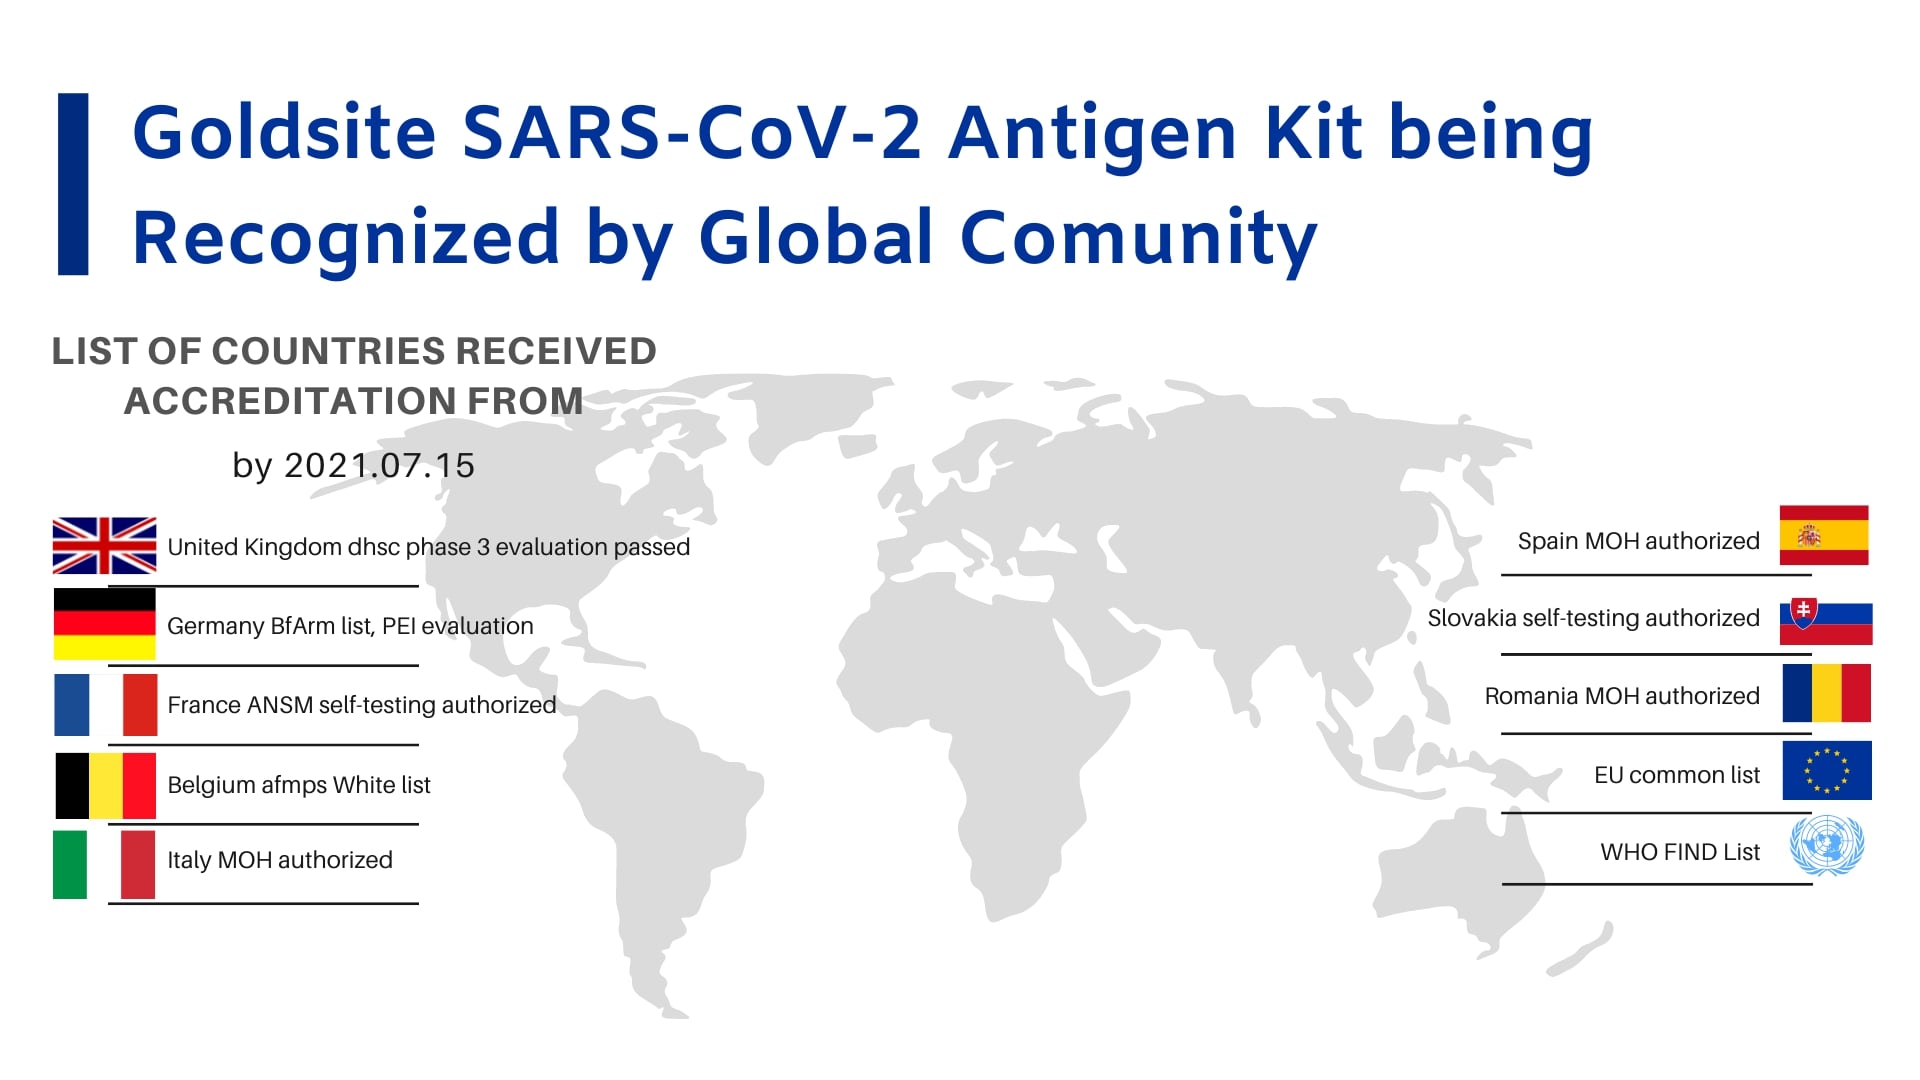 Una descripción general de la certificación de kit de antígeno SARS-CoV-2 recibida por Goldsite (en actualización)